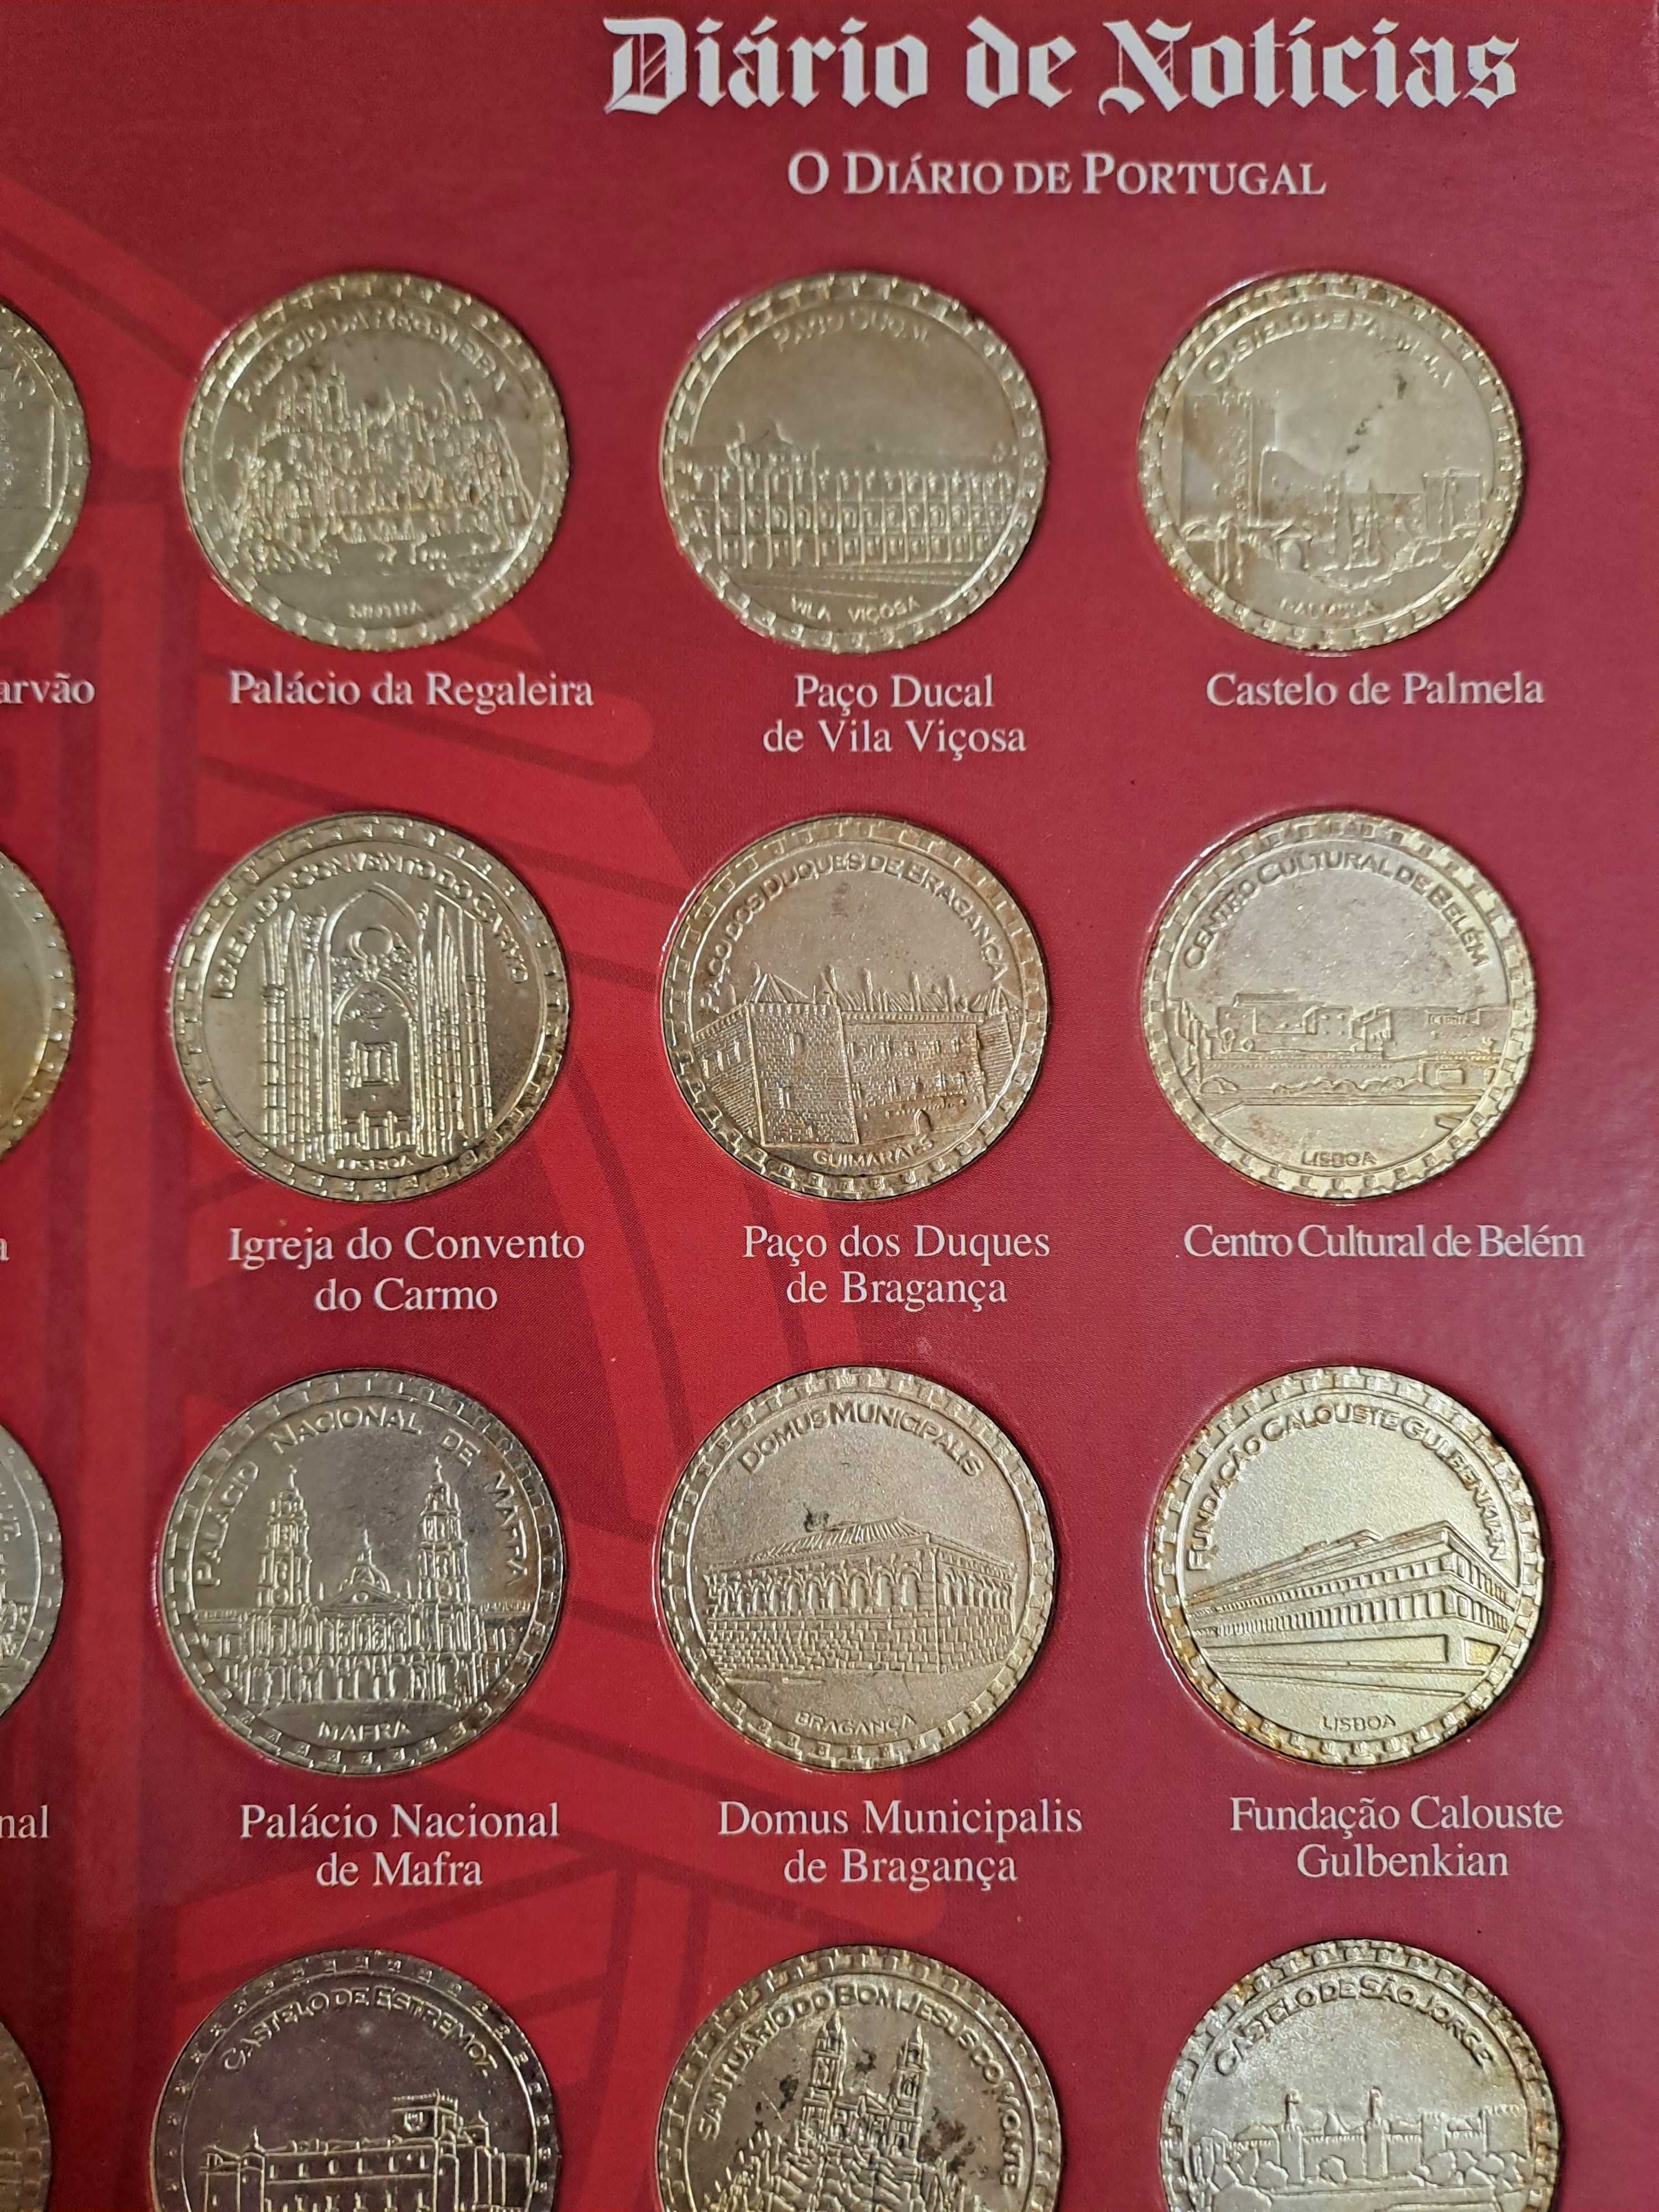 Colecção Grandes Monumentos Portugueses Medalhas - Diário de Notícias